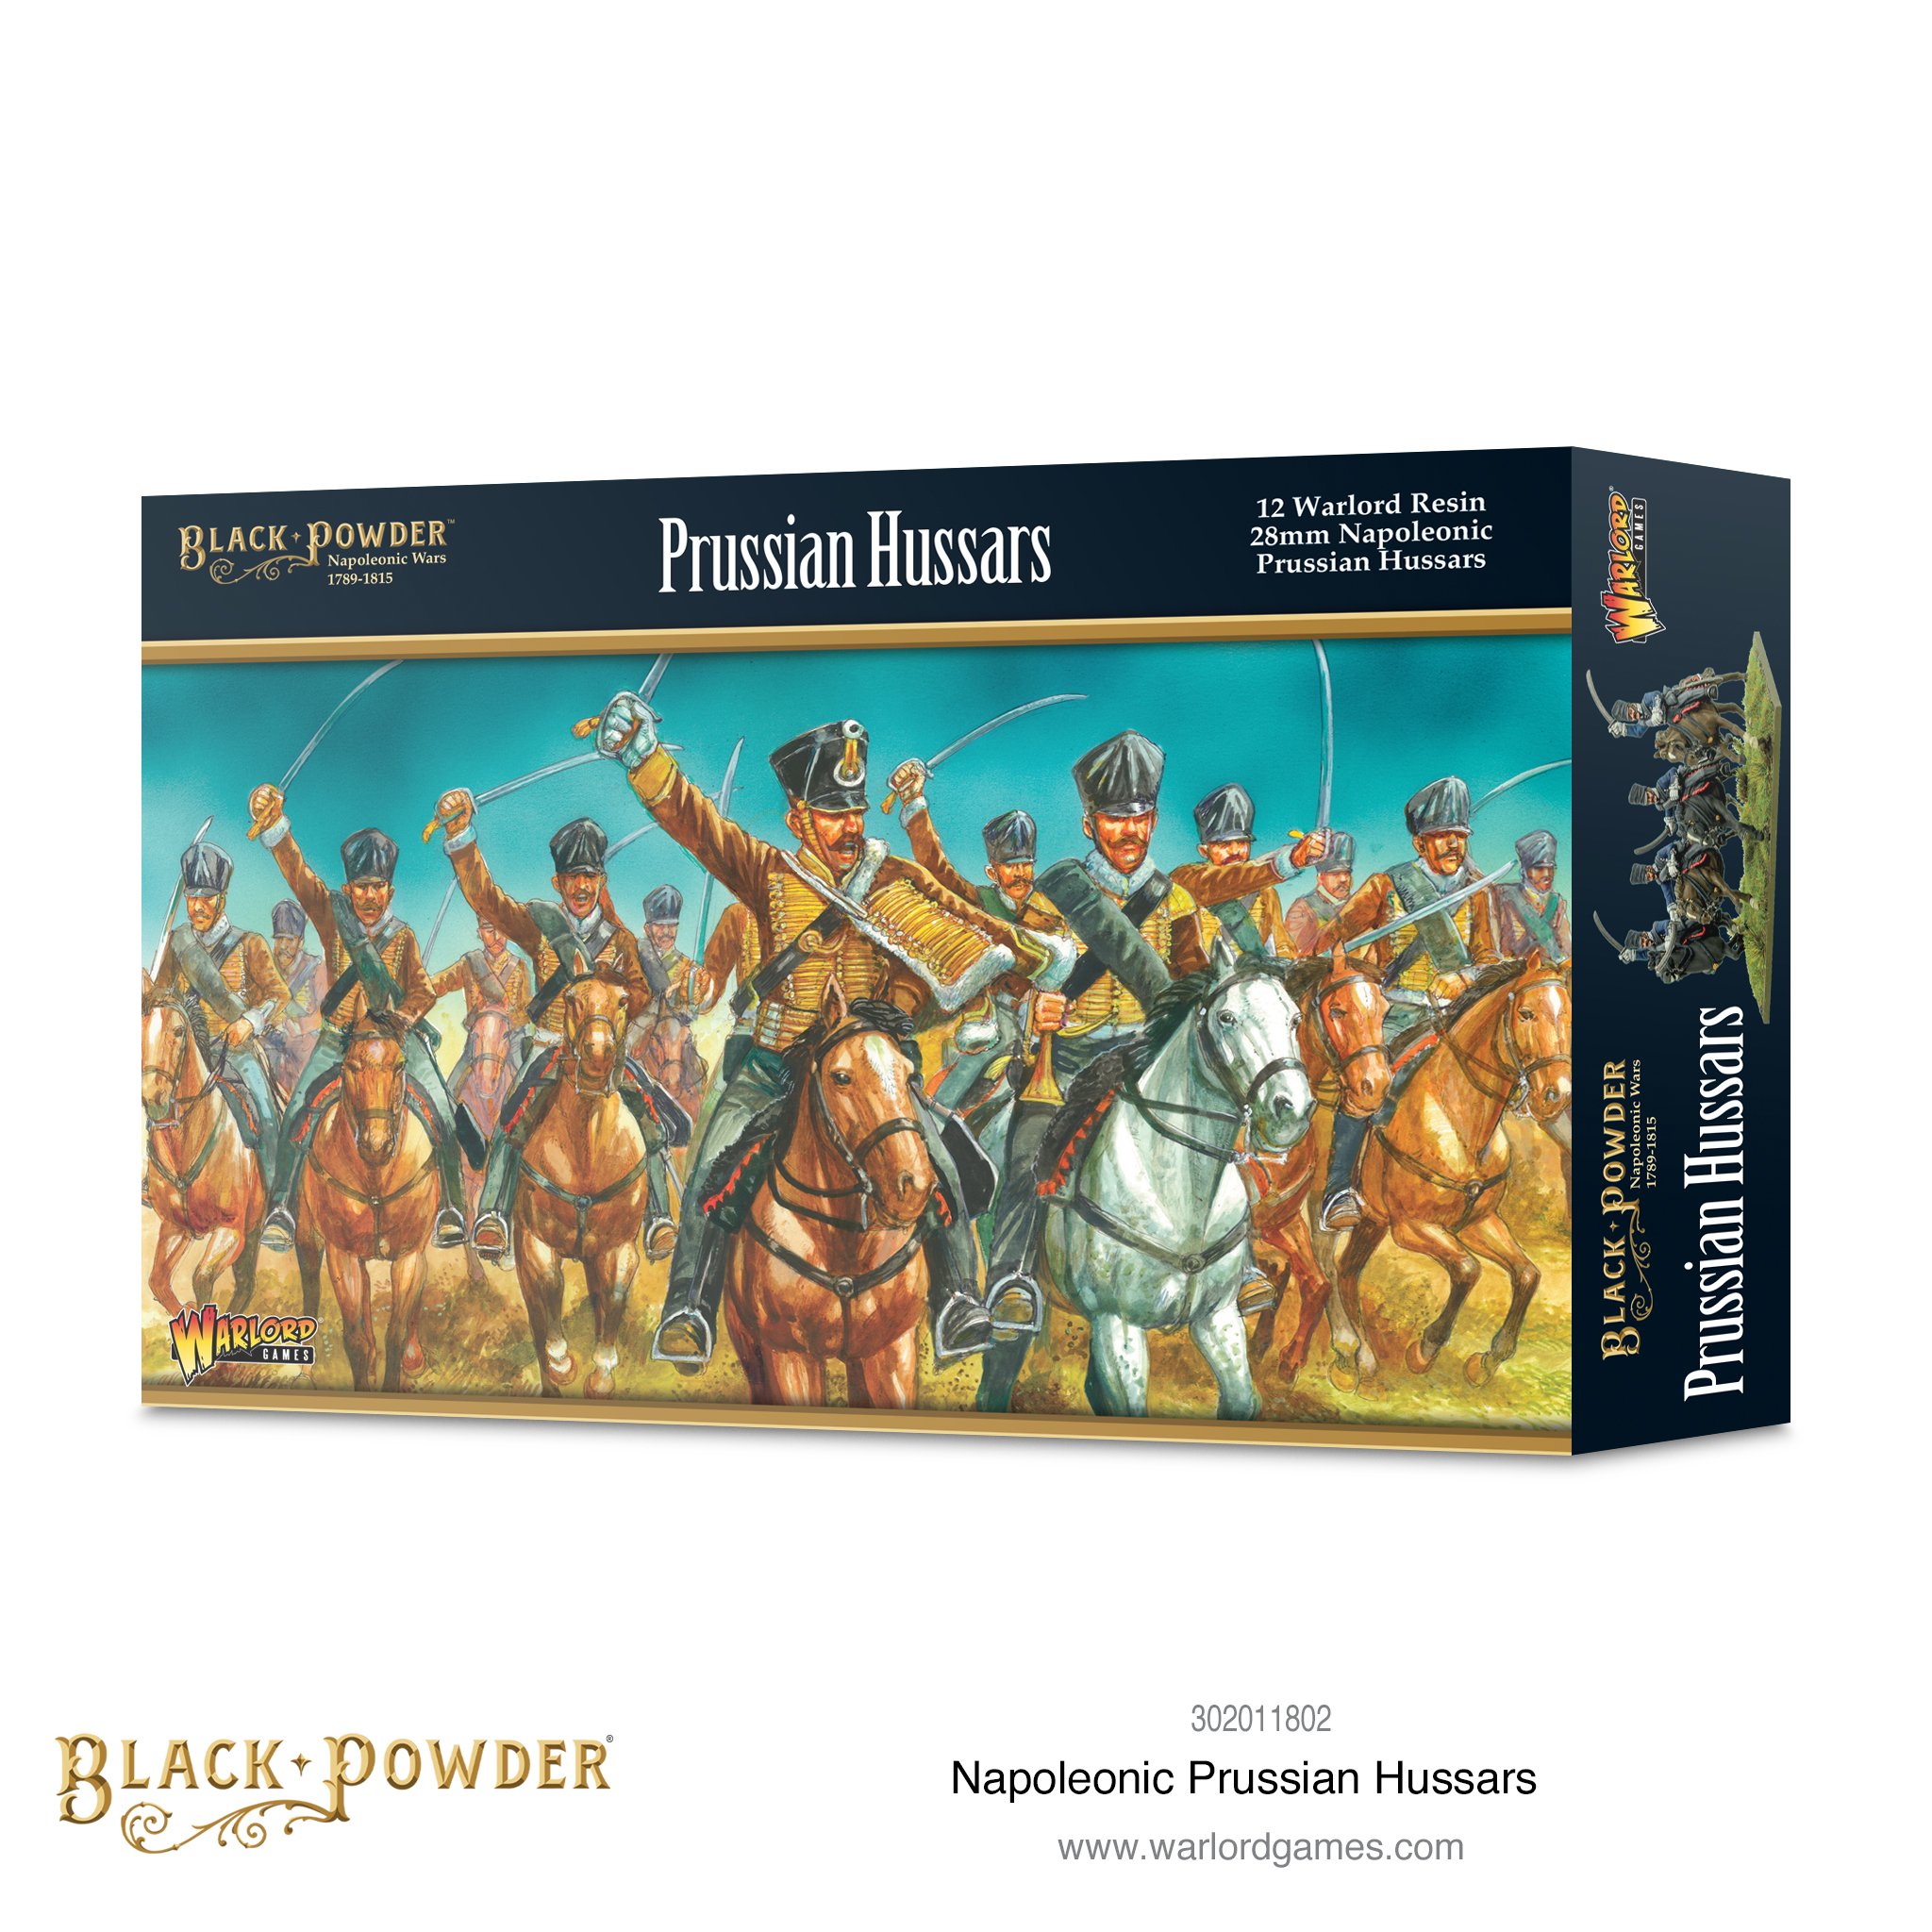 Black Powder: Prussian Hussars 